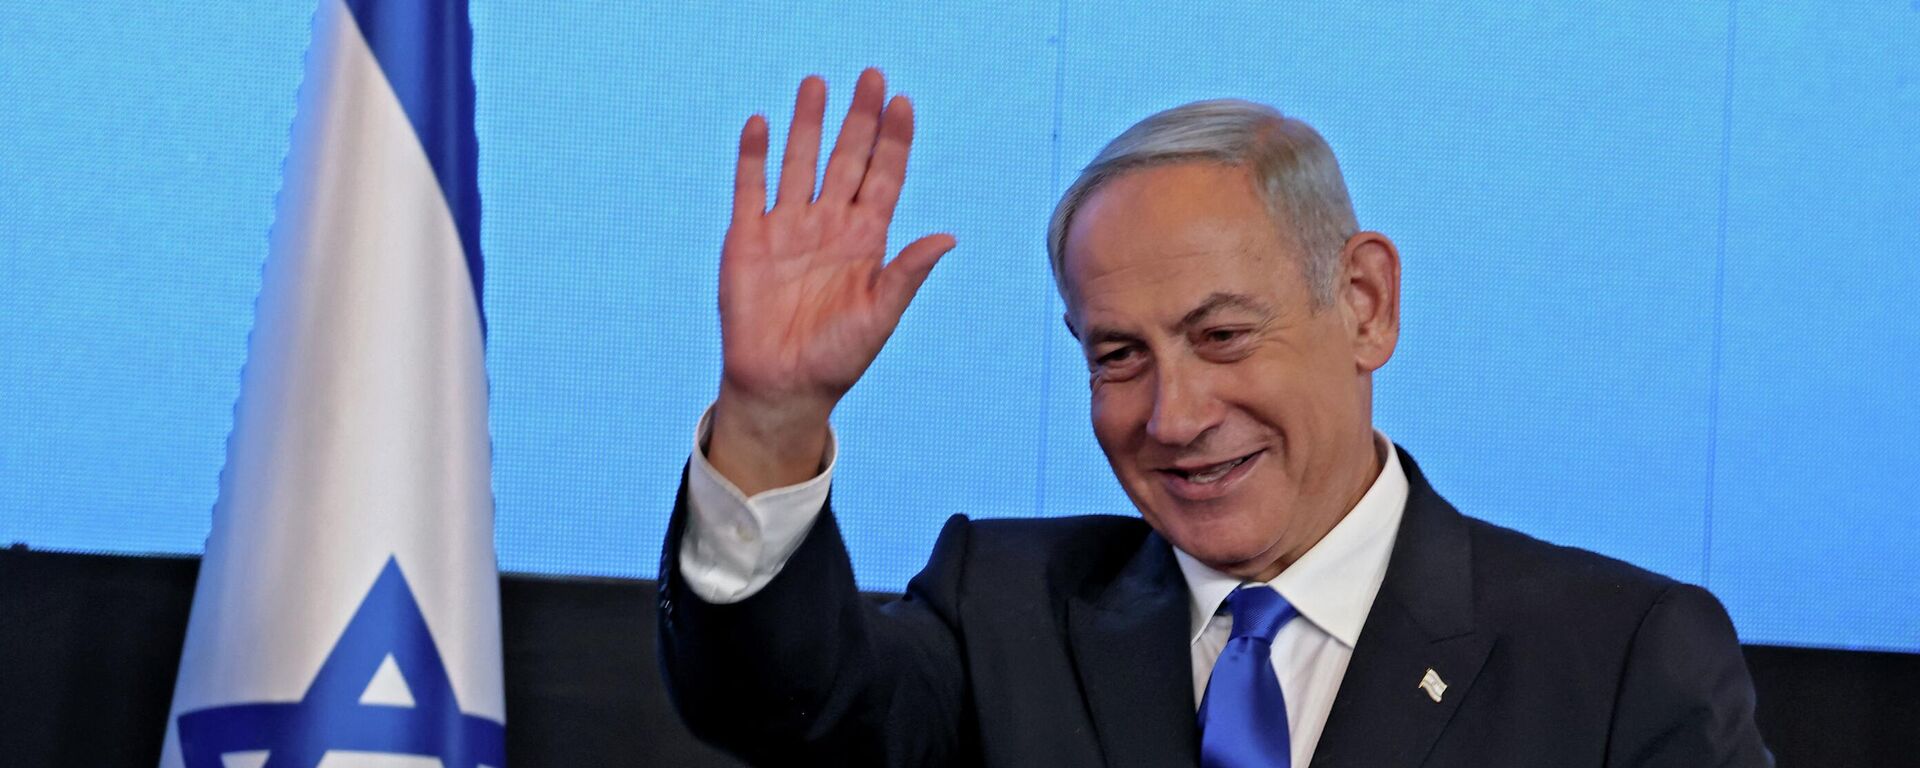 زعيم المعارضة الإسرائيلية بنيامين نتنياهو بعد فوزه في الانتخابات العامة في إسرائيل، نوفمبر/ تشرين الثاني 2022. - سبوتنيك عربي, 1920, 23.02.2023